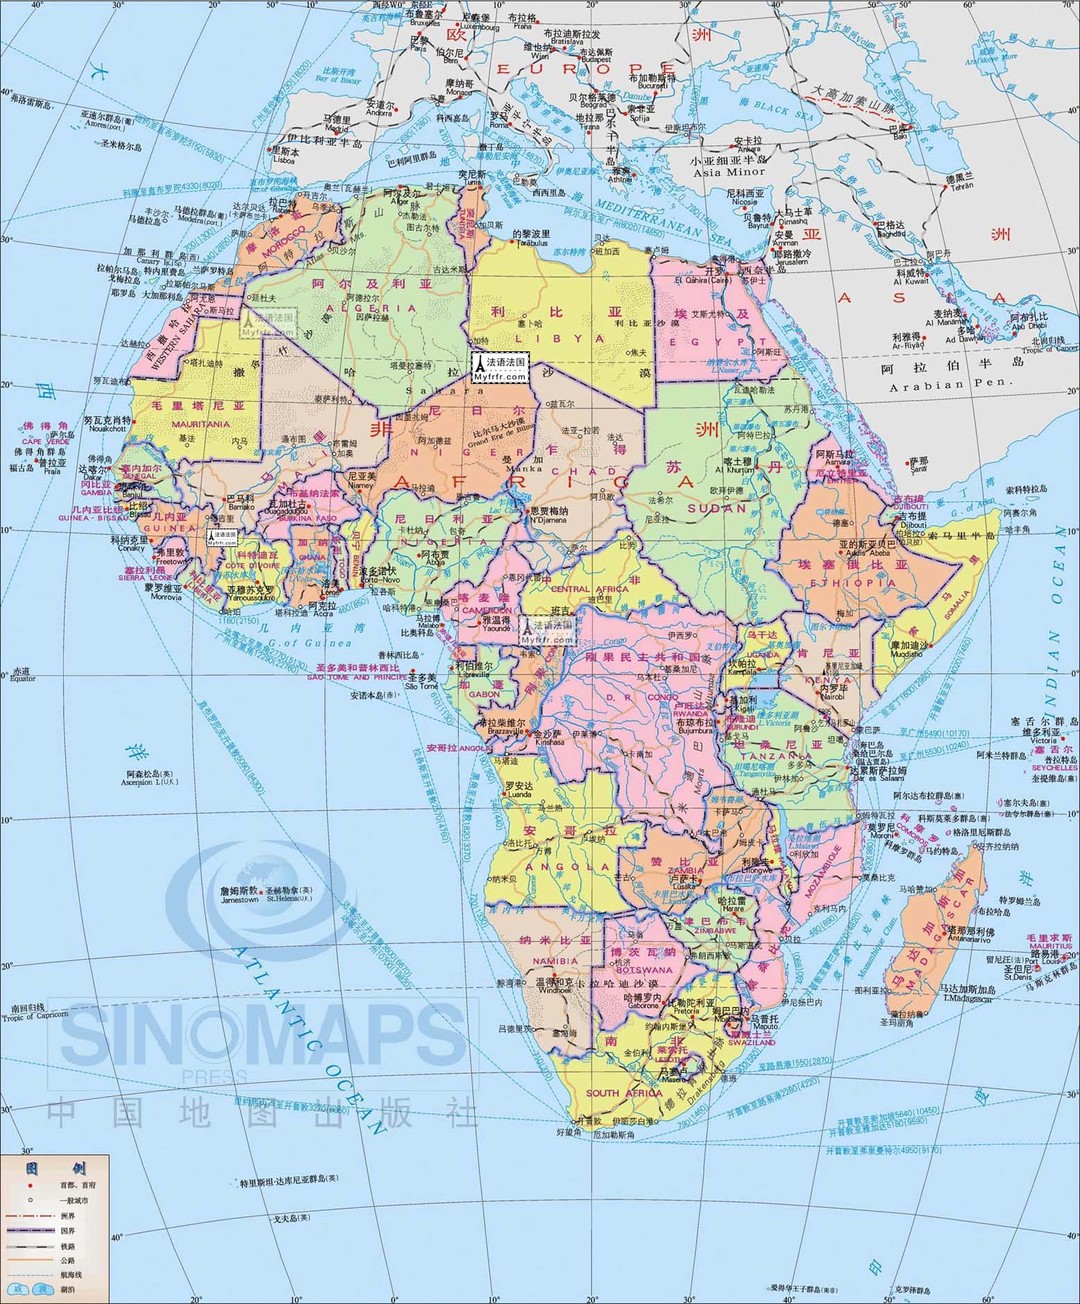 群岛(葡),马德拉群岛(葡)(9)东非:埃塞俄比亚,厄立特里亚,索马里